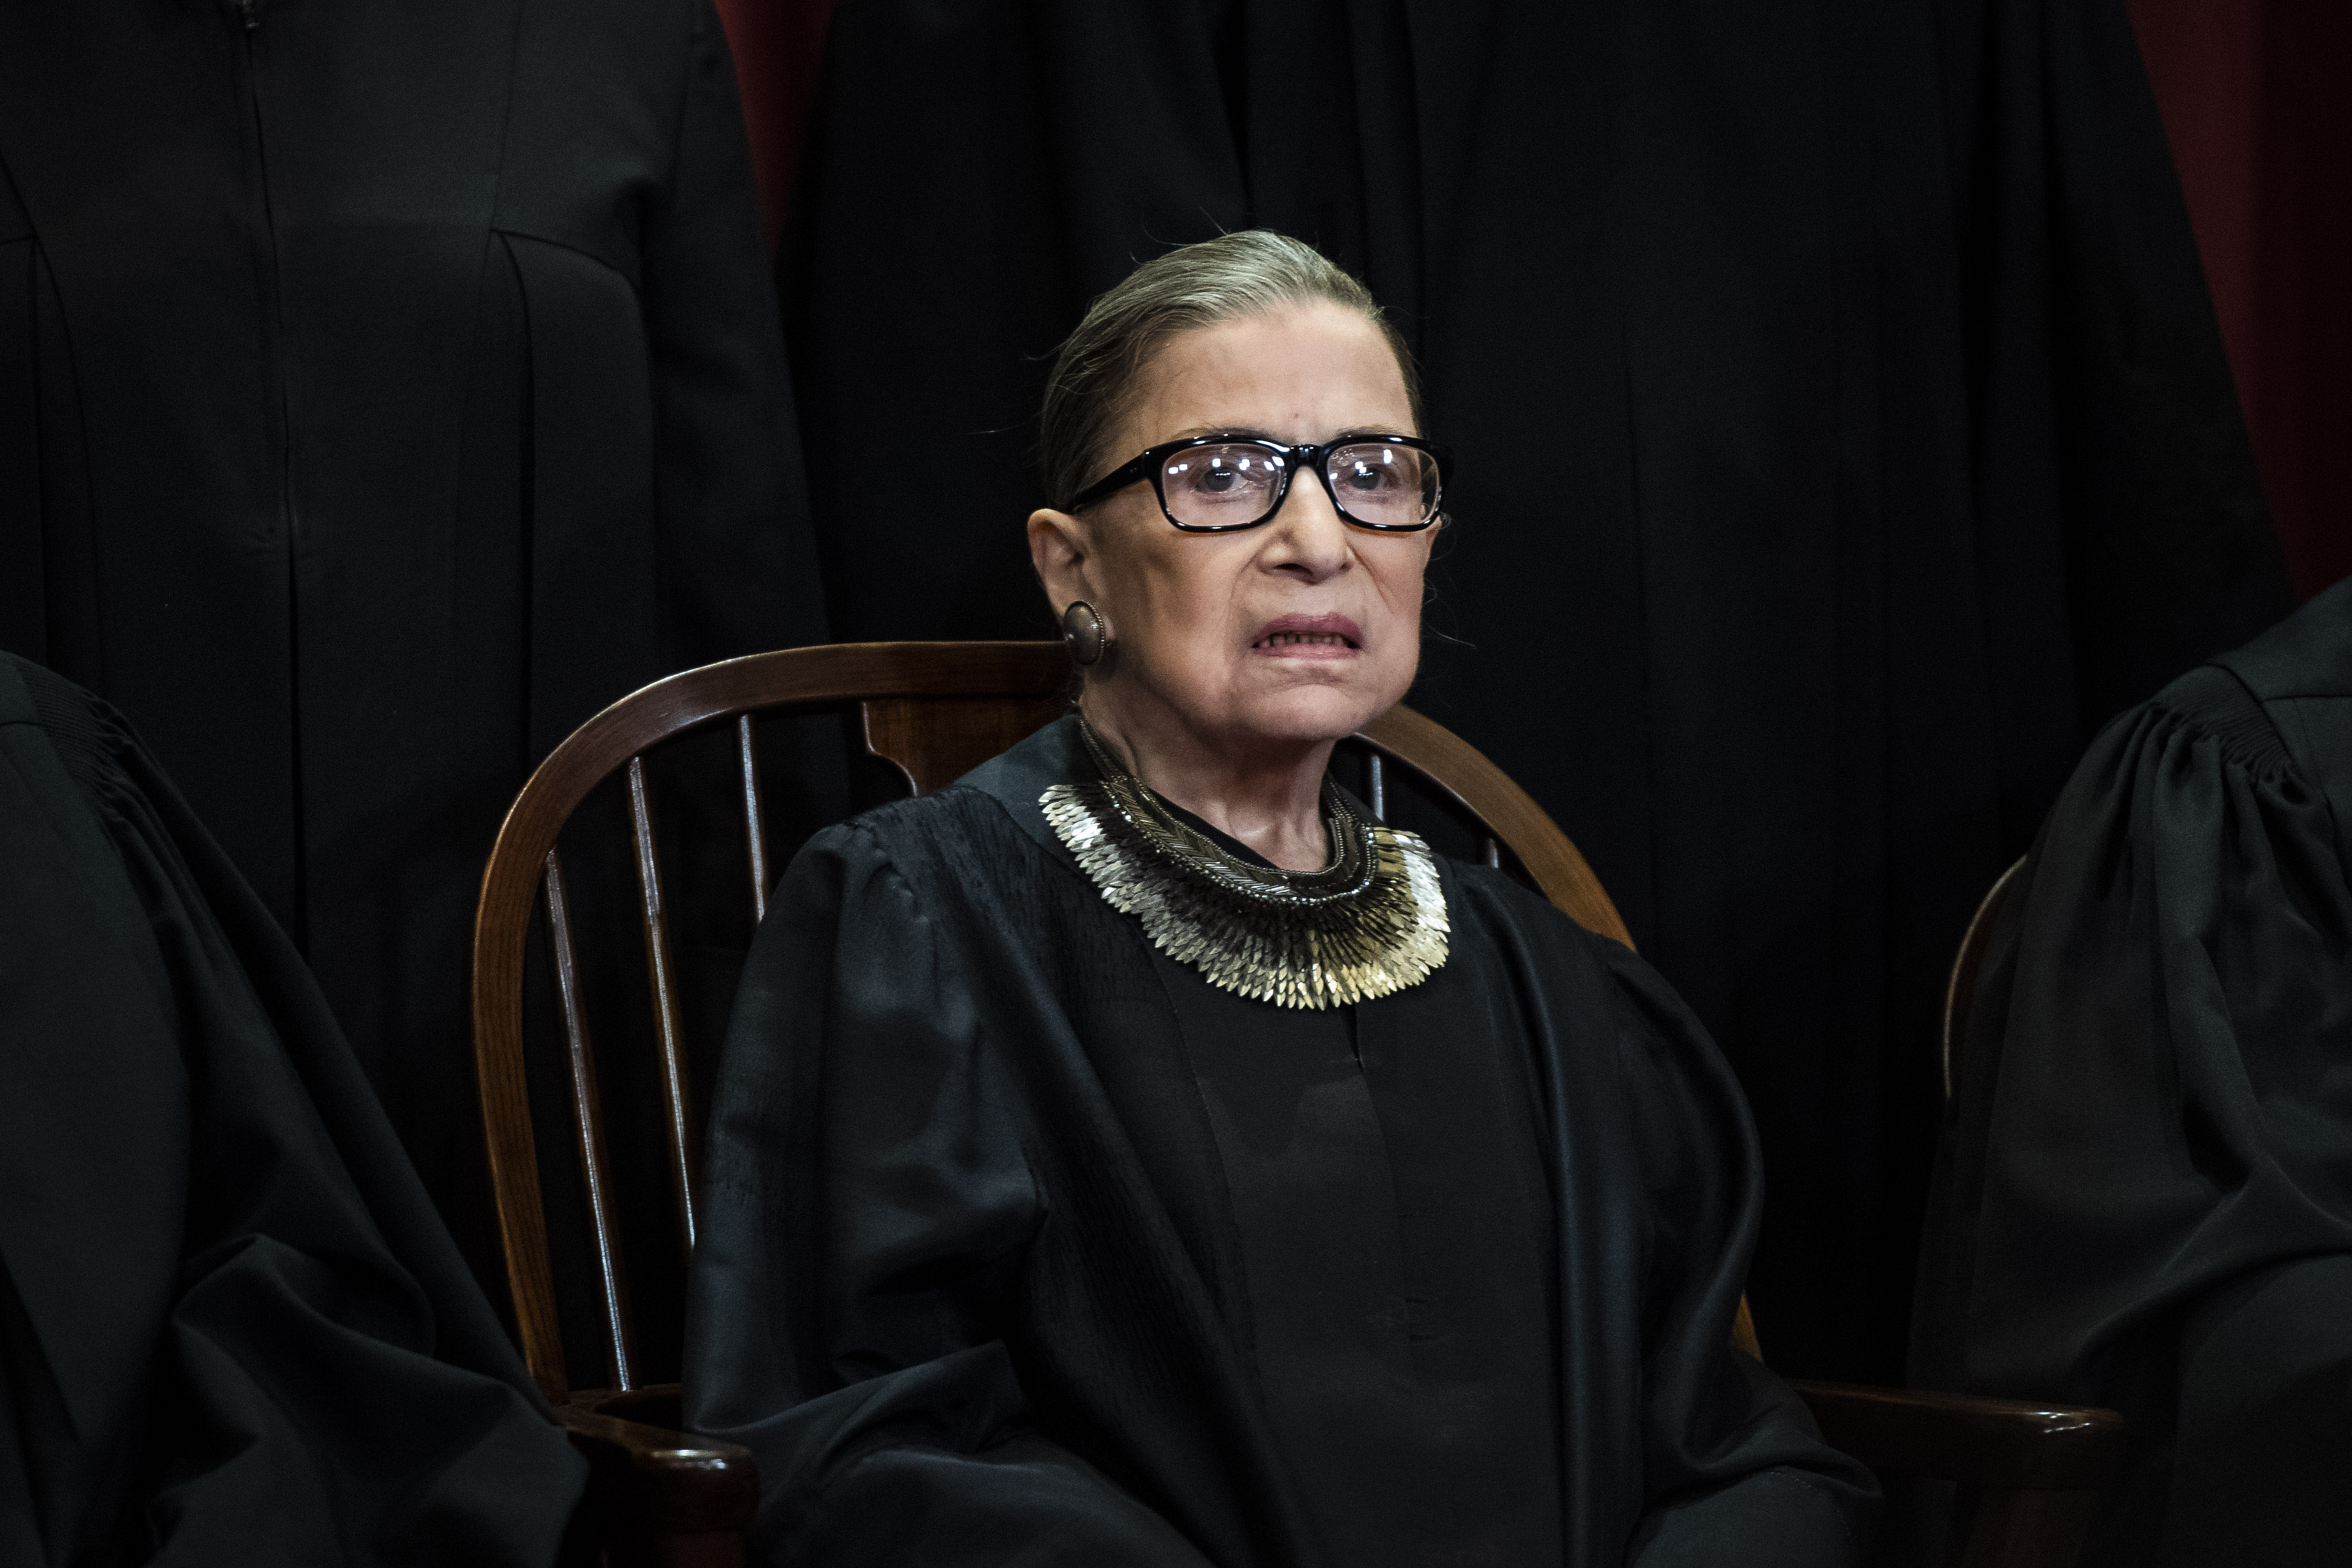 Ruth Joan Bader Ginsburg es una jueza y jurista estadounidense que ha destacado especialmente por su trabajo en la lucha por la igualdad legal entre hombres y mujeres. – Foto: Washington Post por Jabin Botsford